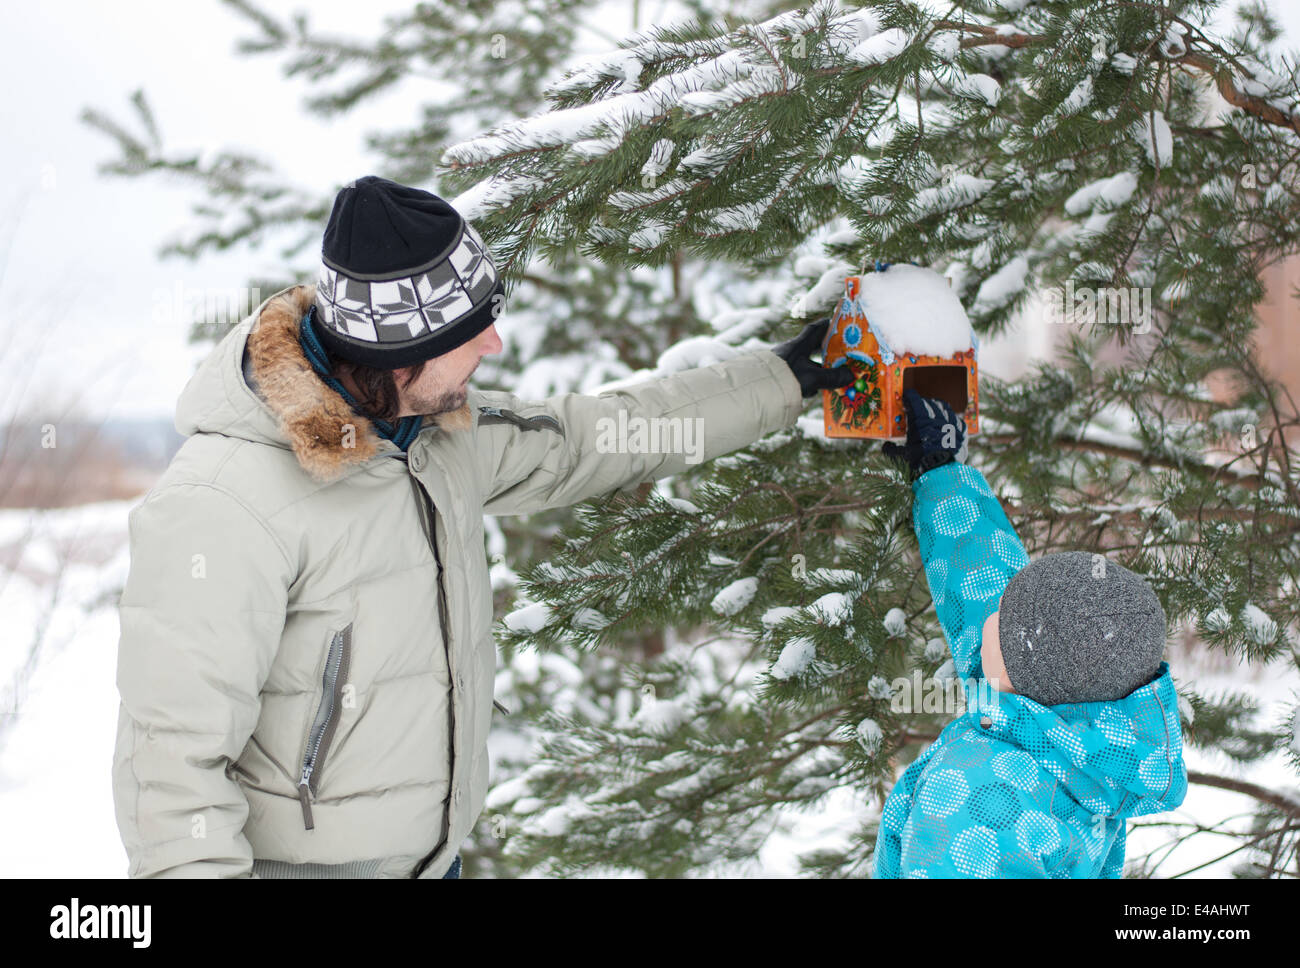 Famille son père deux homme garçon enfant hiver 7 8 ans veste couverte de neige hat cap rss alimentation forêt parc pendaison Zelenograd Mo Banque D'Images